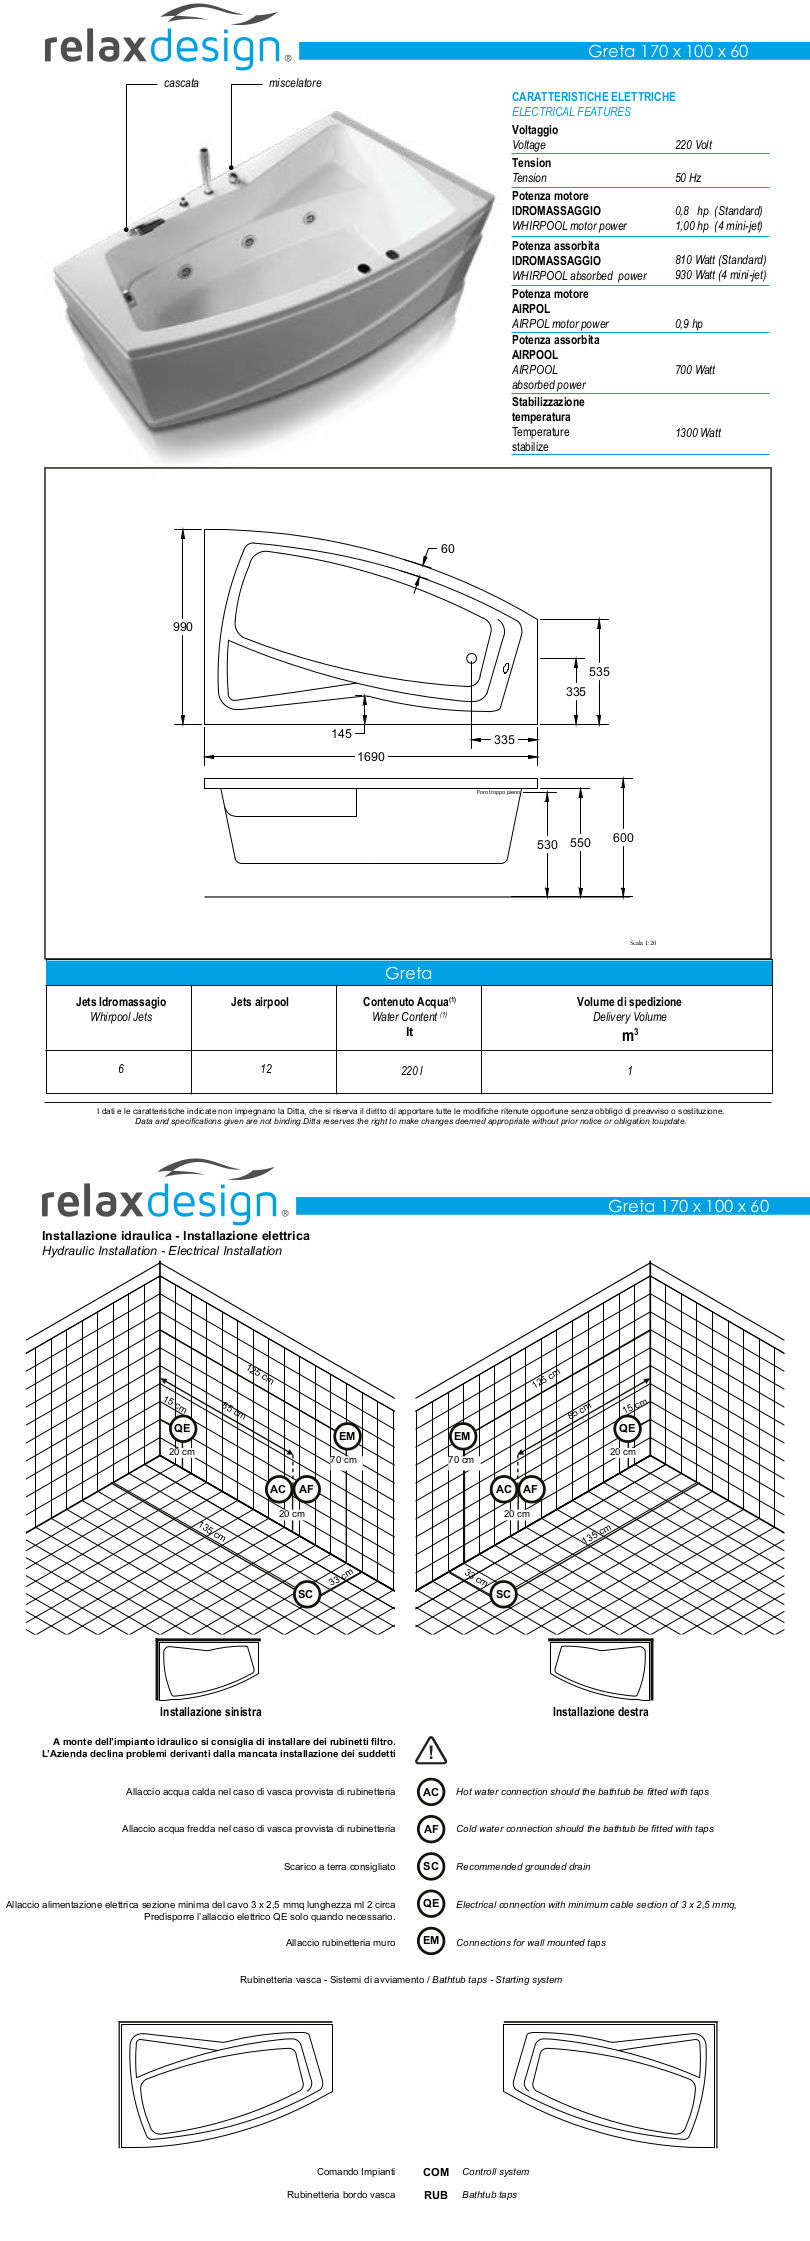 greta relax design badewanne datenblatt